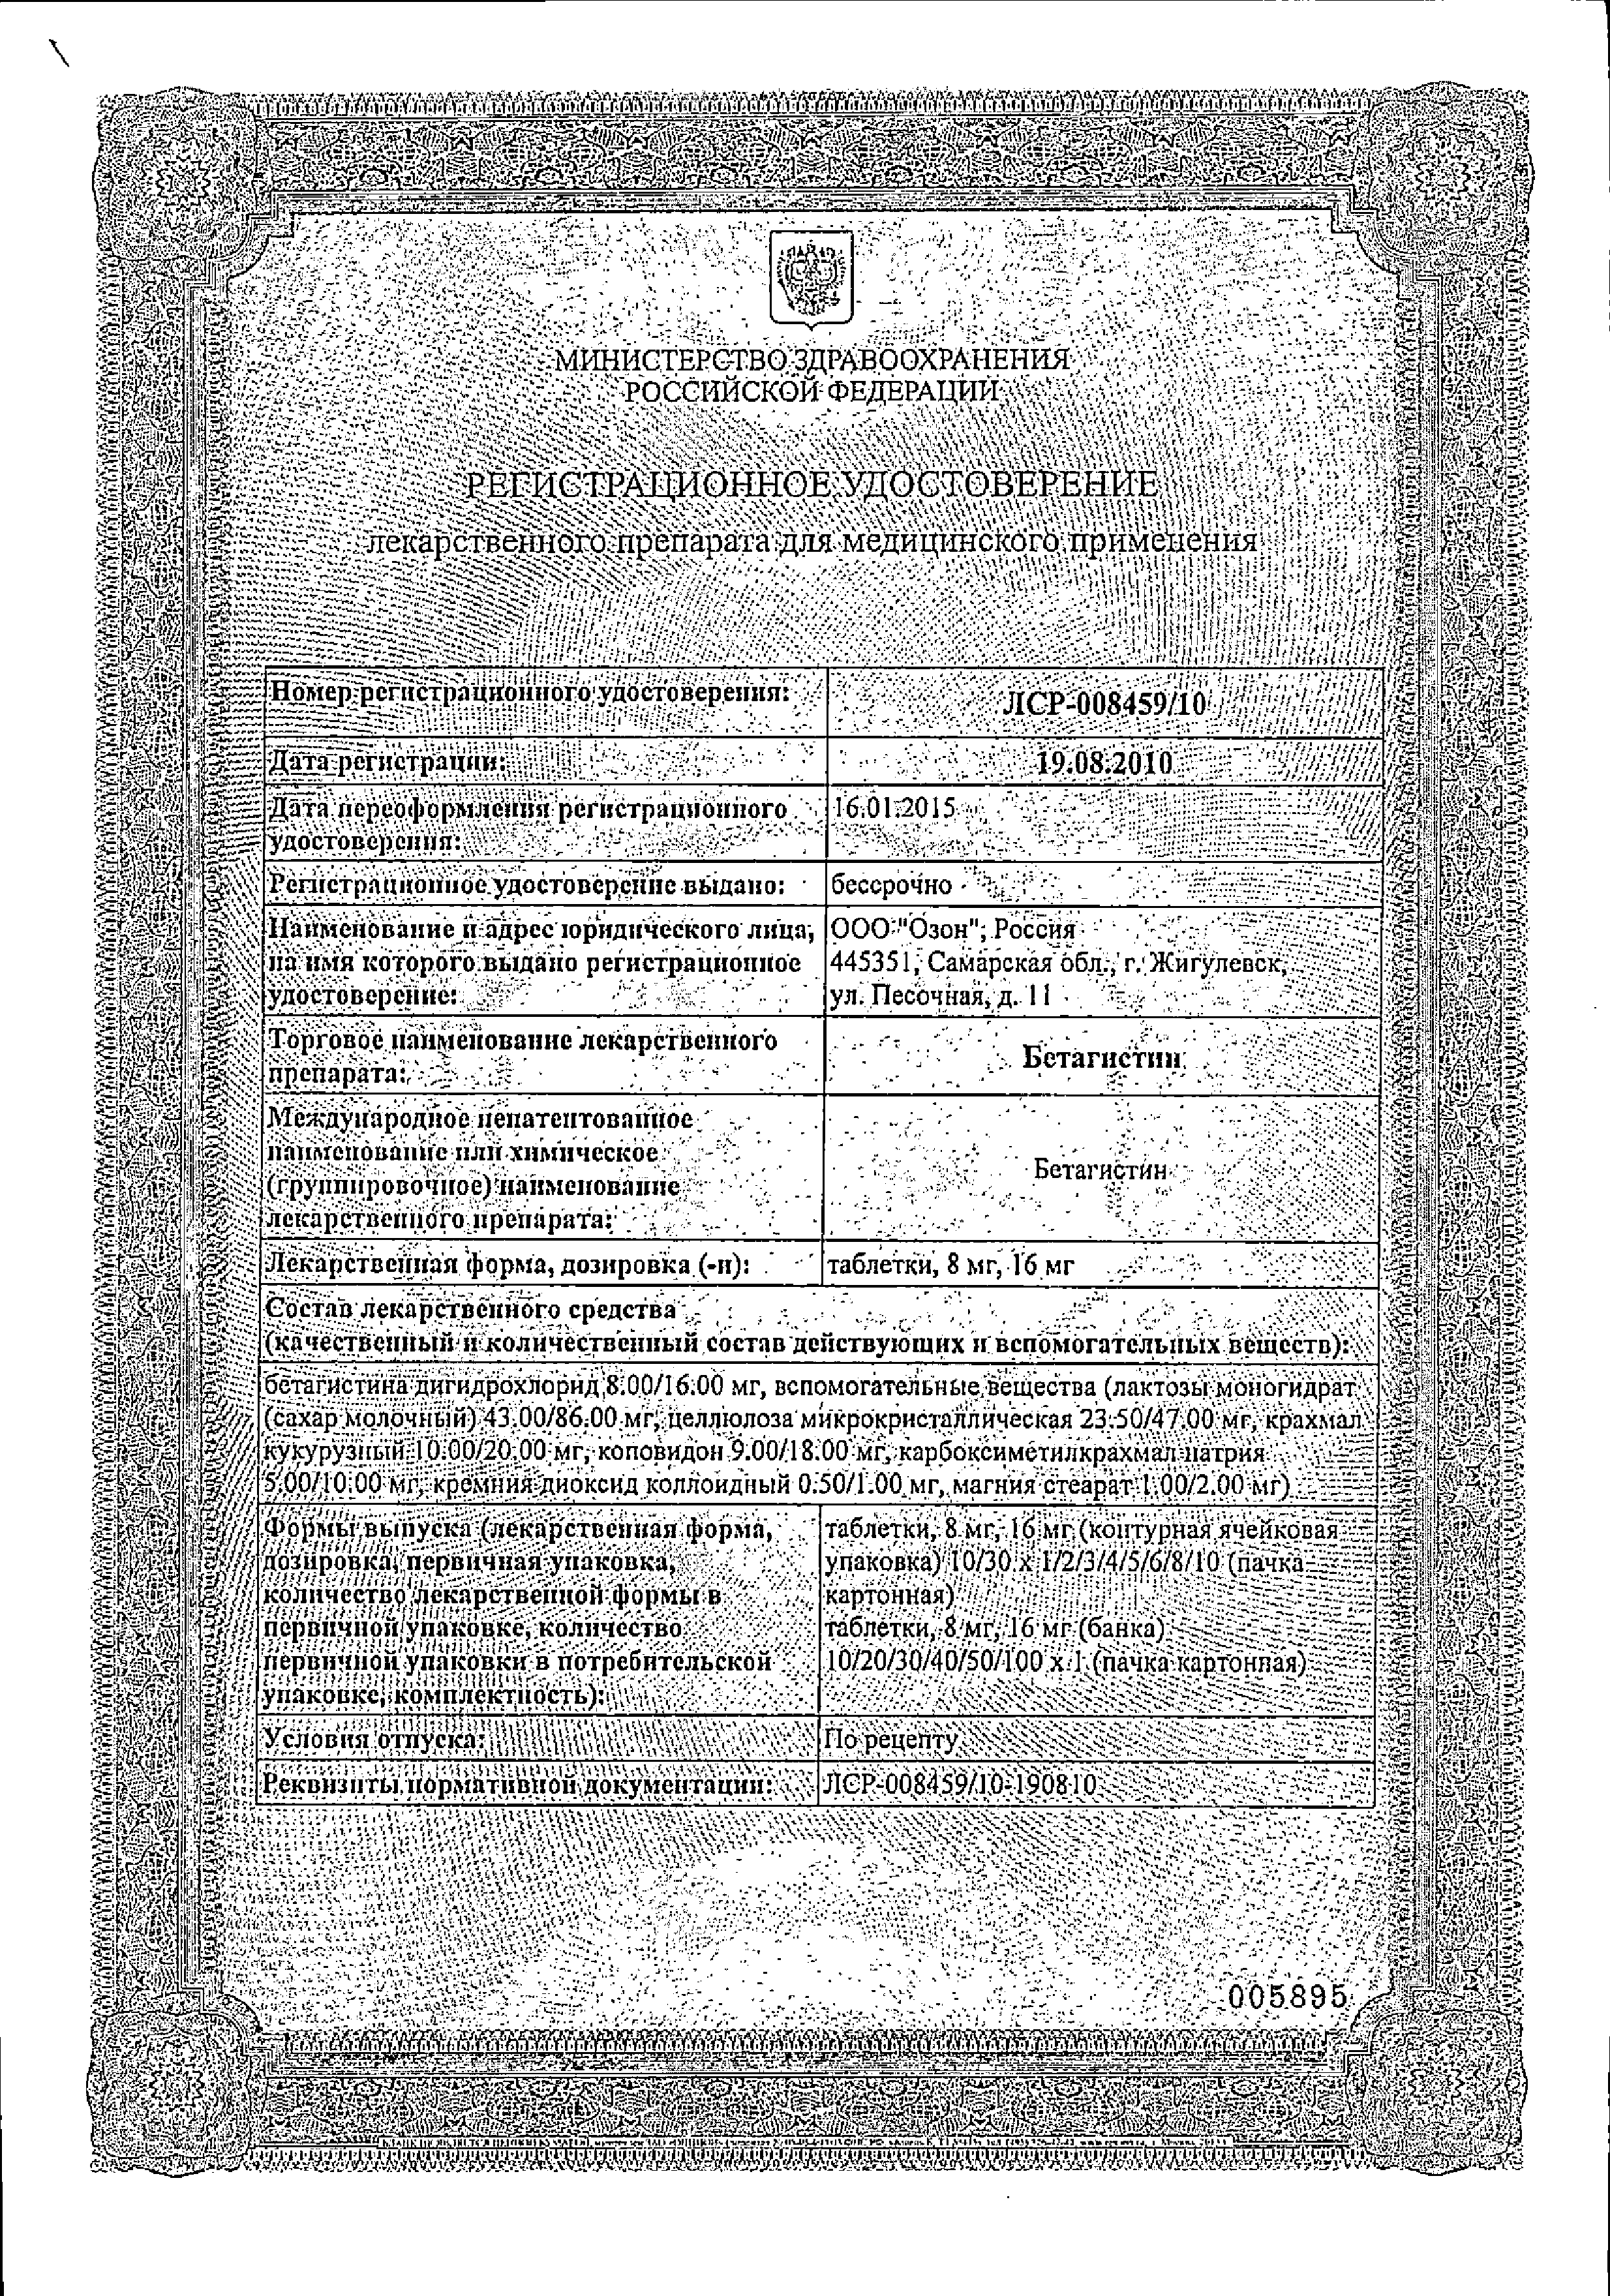 Бетагистин сертификат